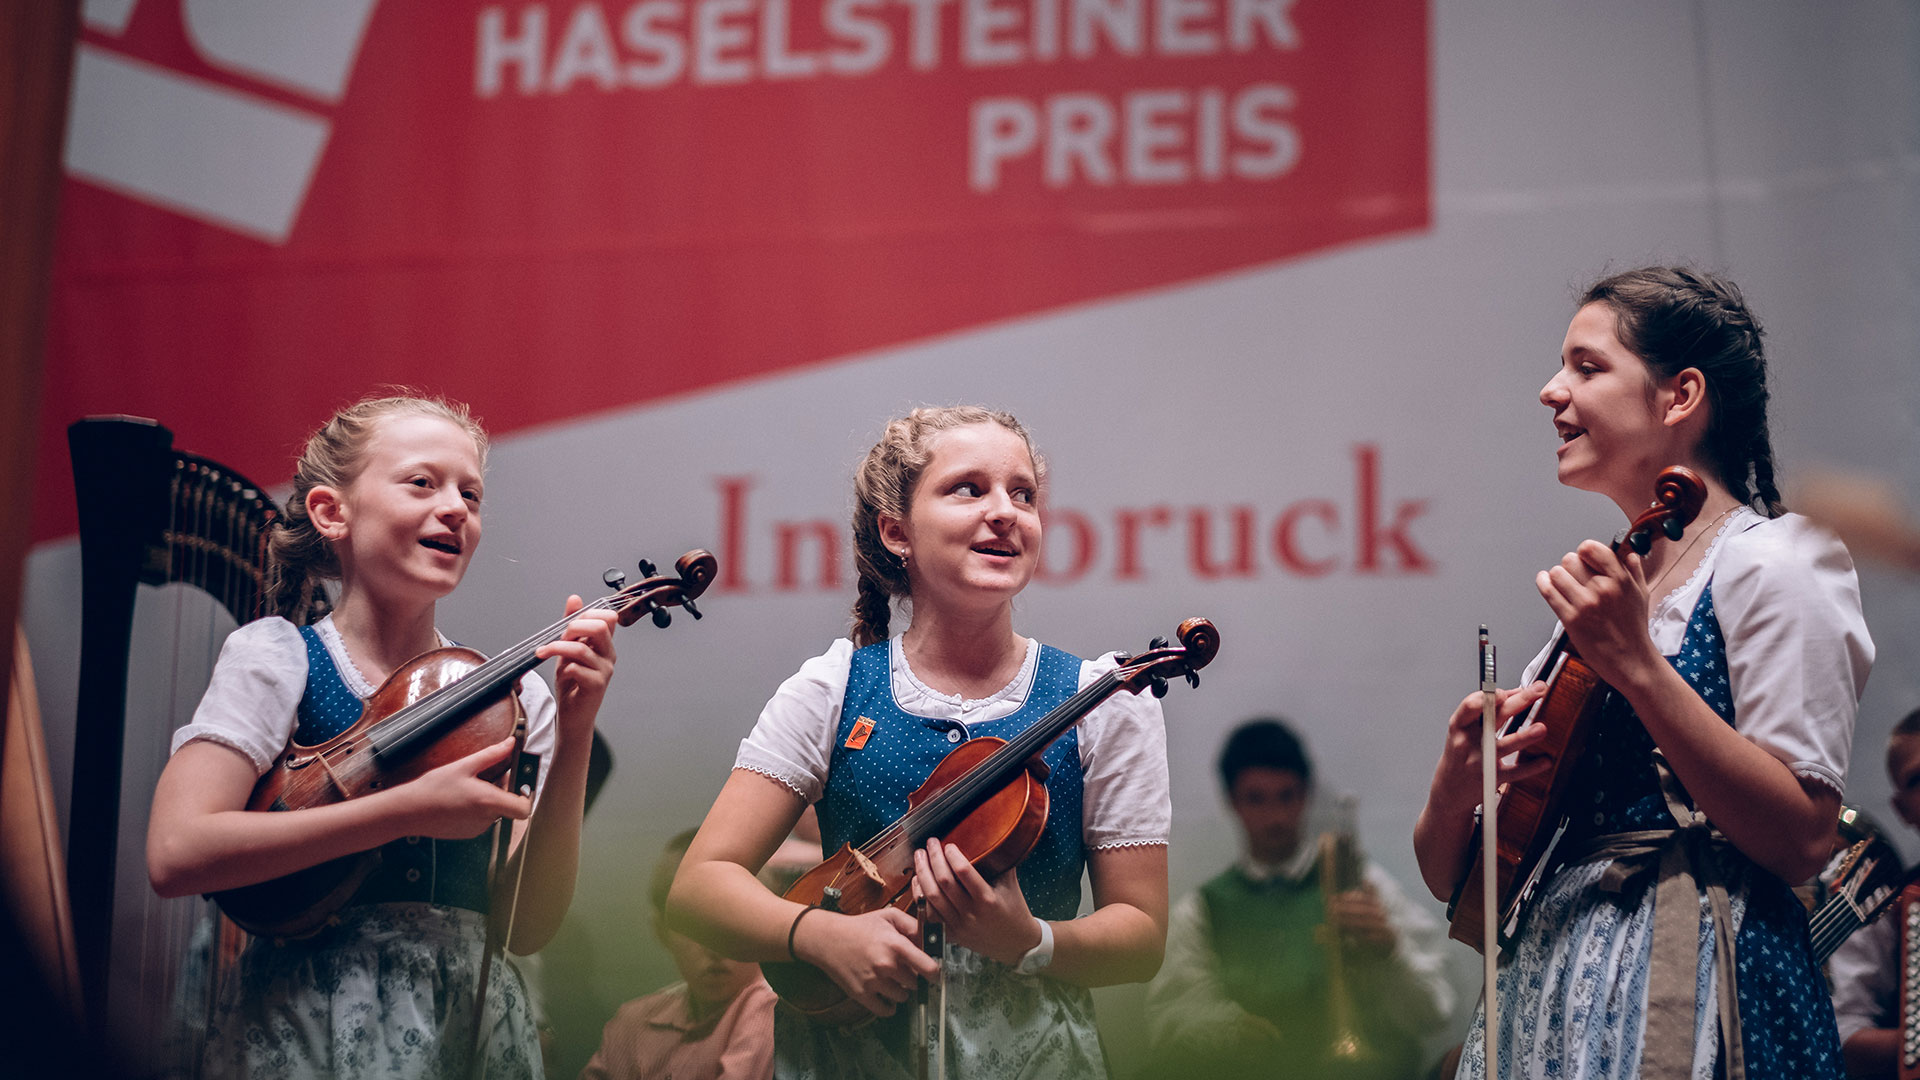 50 Jahre Alpenländischer Volksmusikwettbewerb